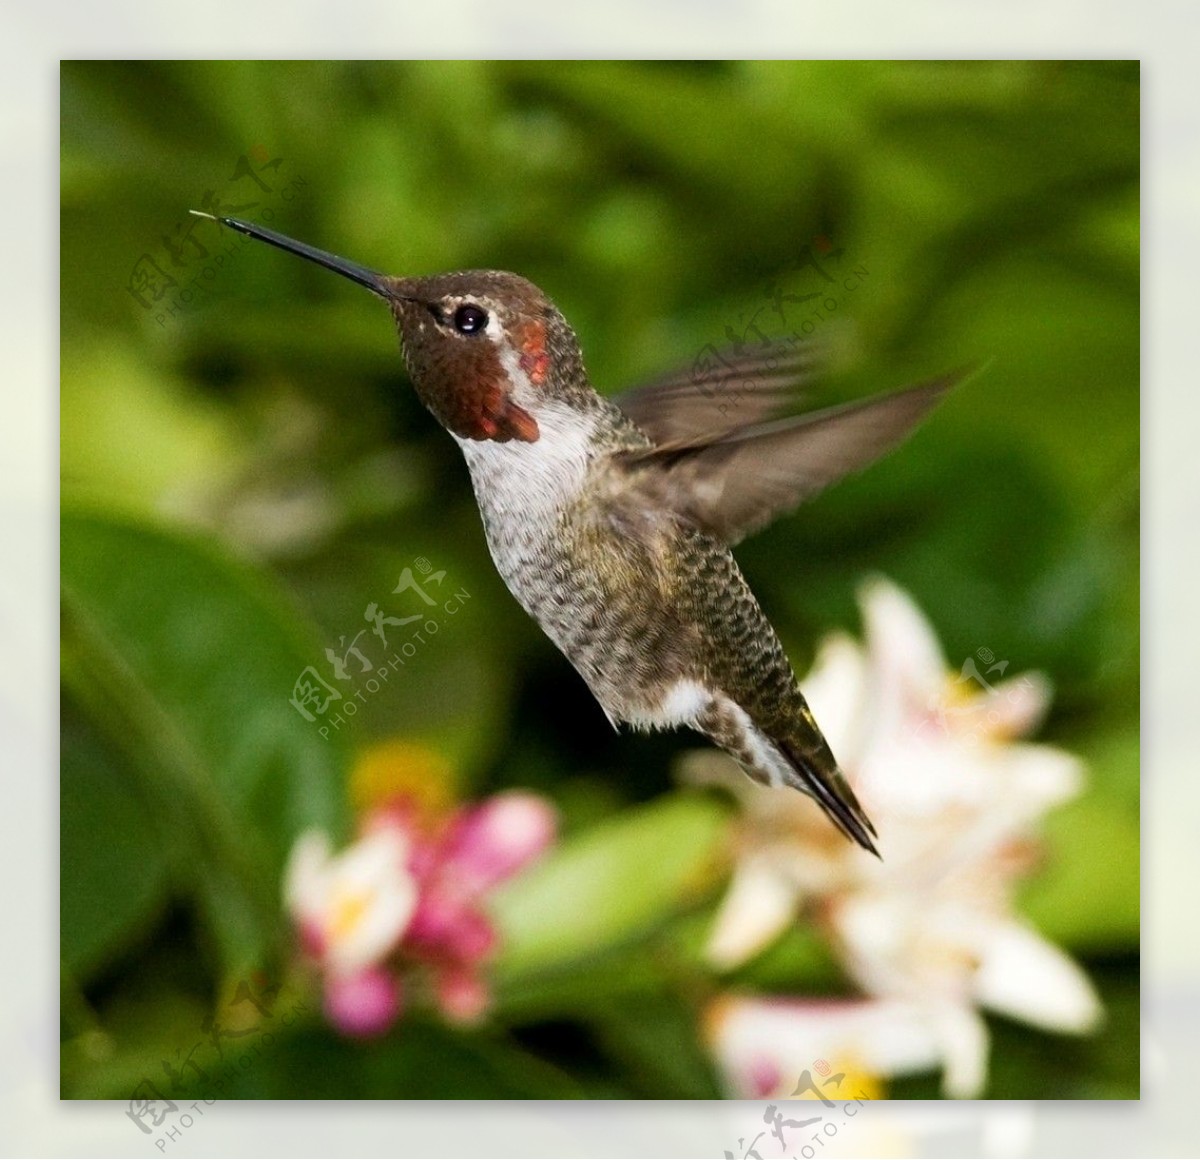 Gambar : cabang, burung, sayap, hijau, paruh, hummingbird, kuning, fauna, bertulang belakang ...